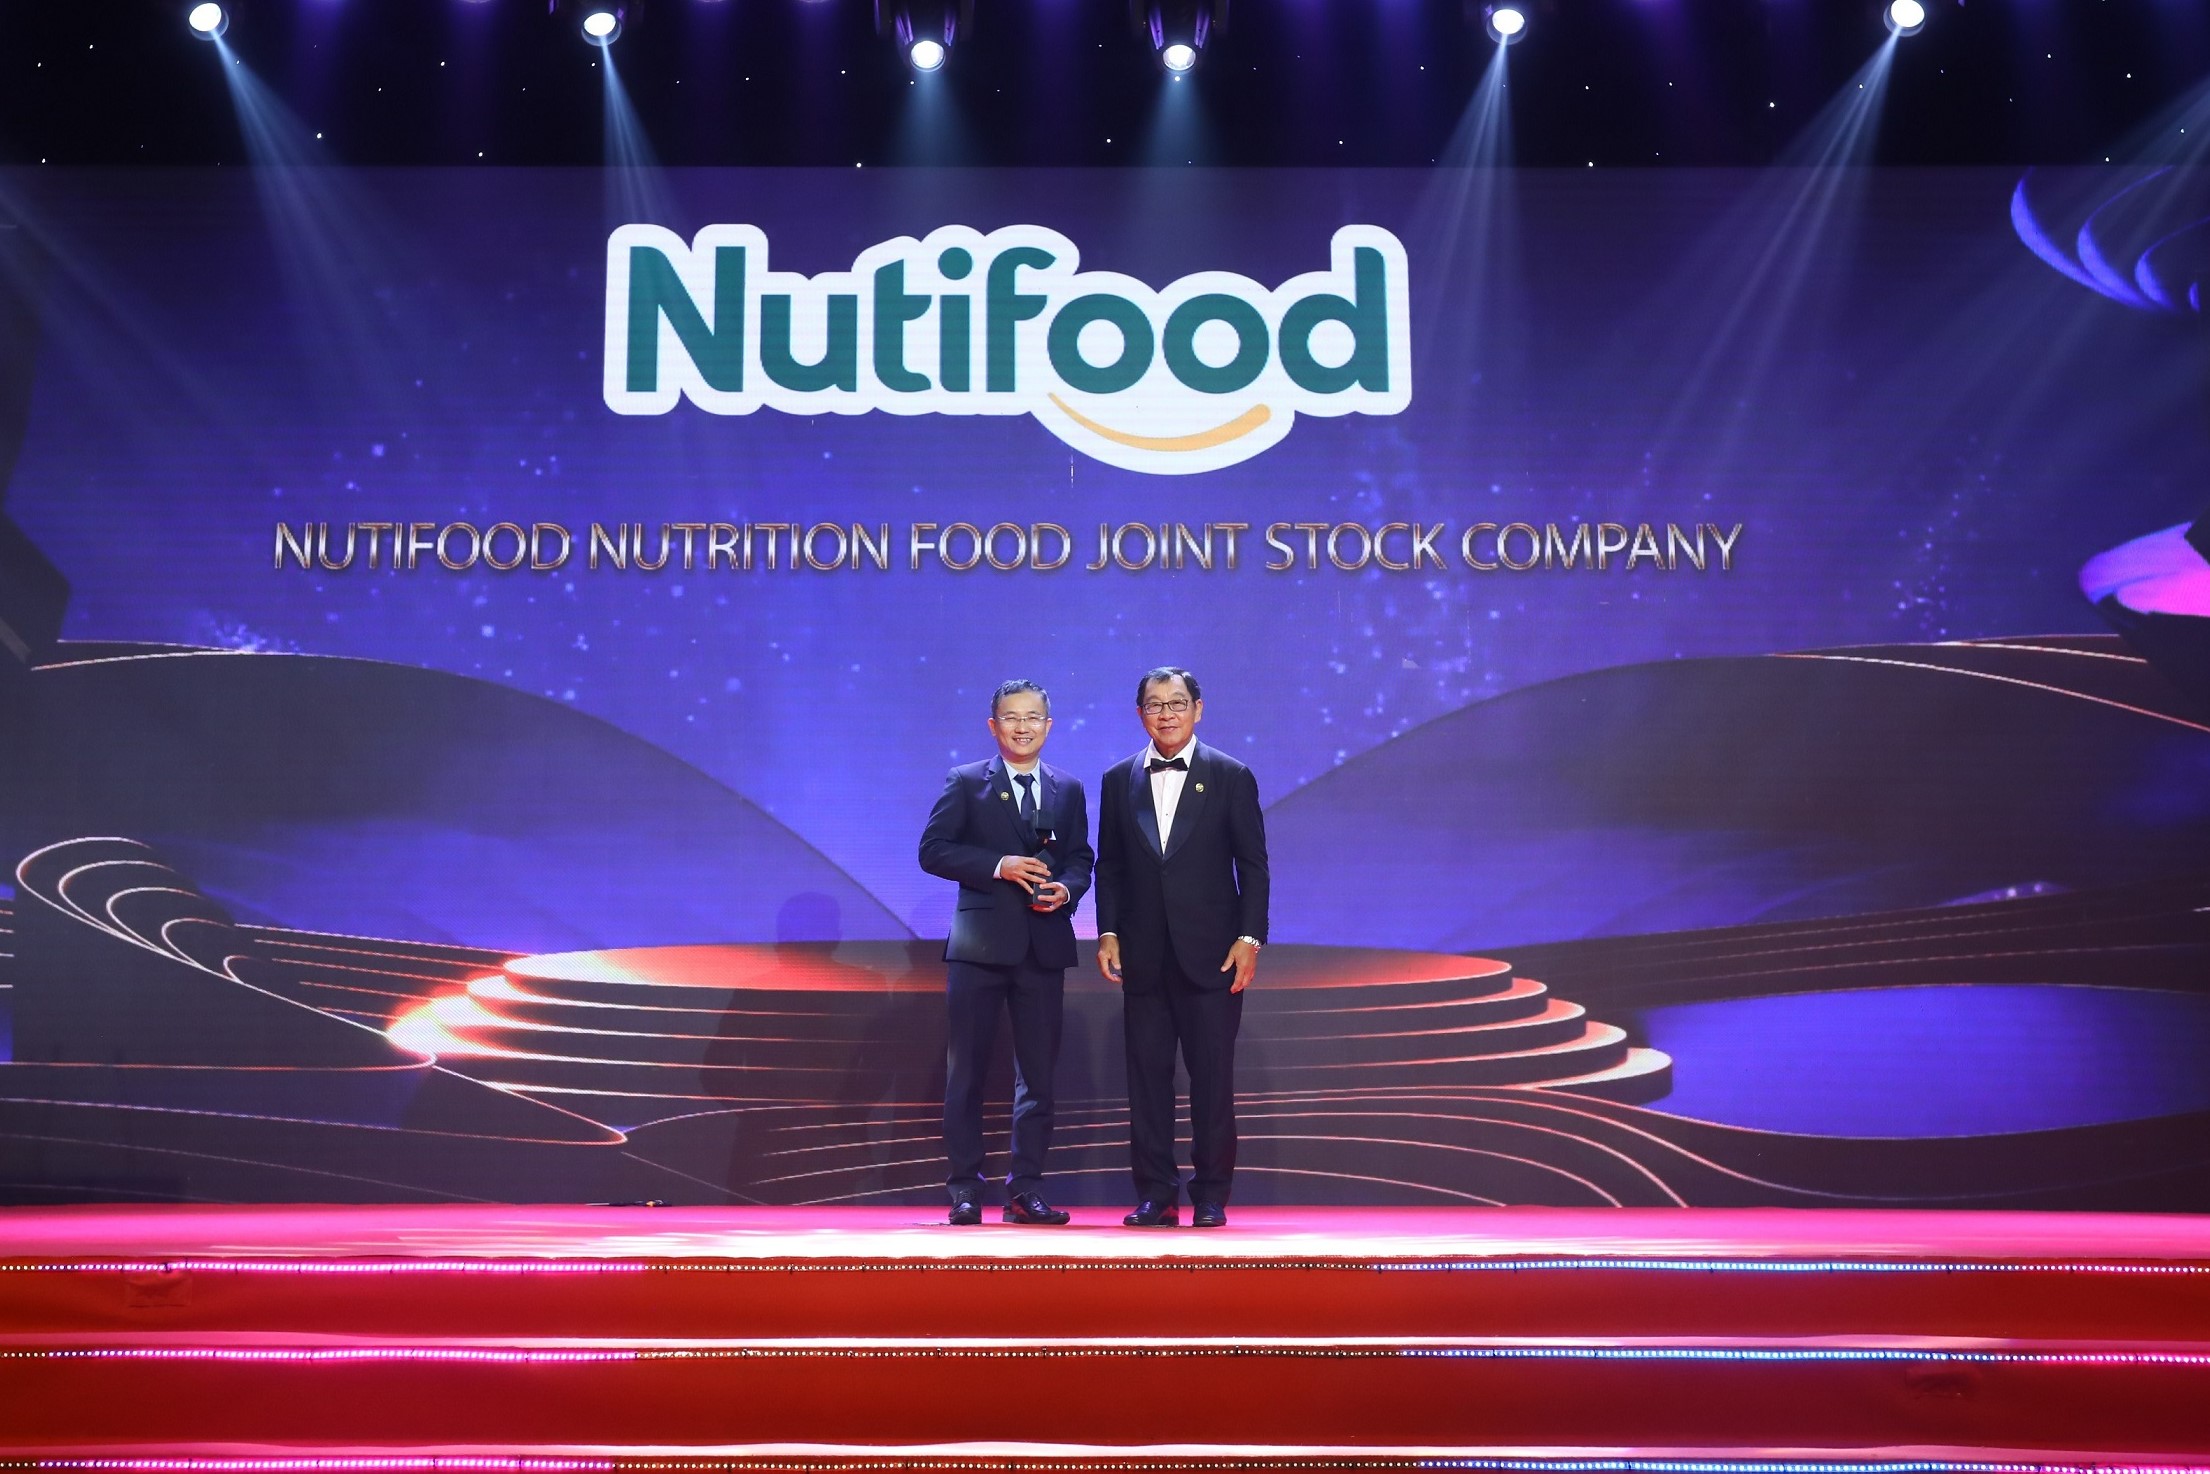 Tiếp nối M&A công ty Thụy Điển, Nutifood bội thu loạt giải thưởng uy tín châu Á